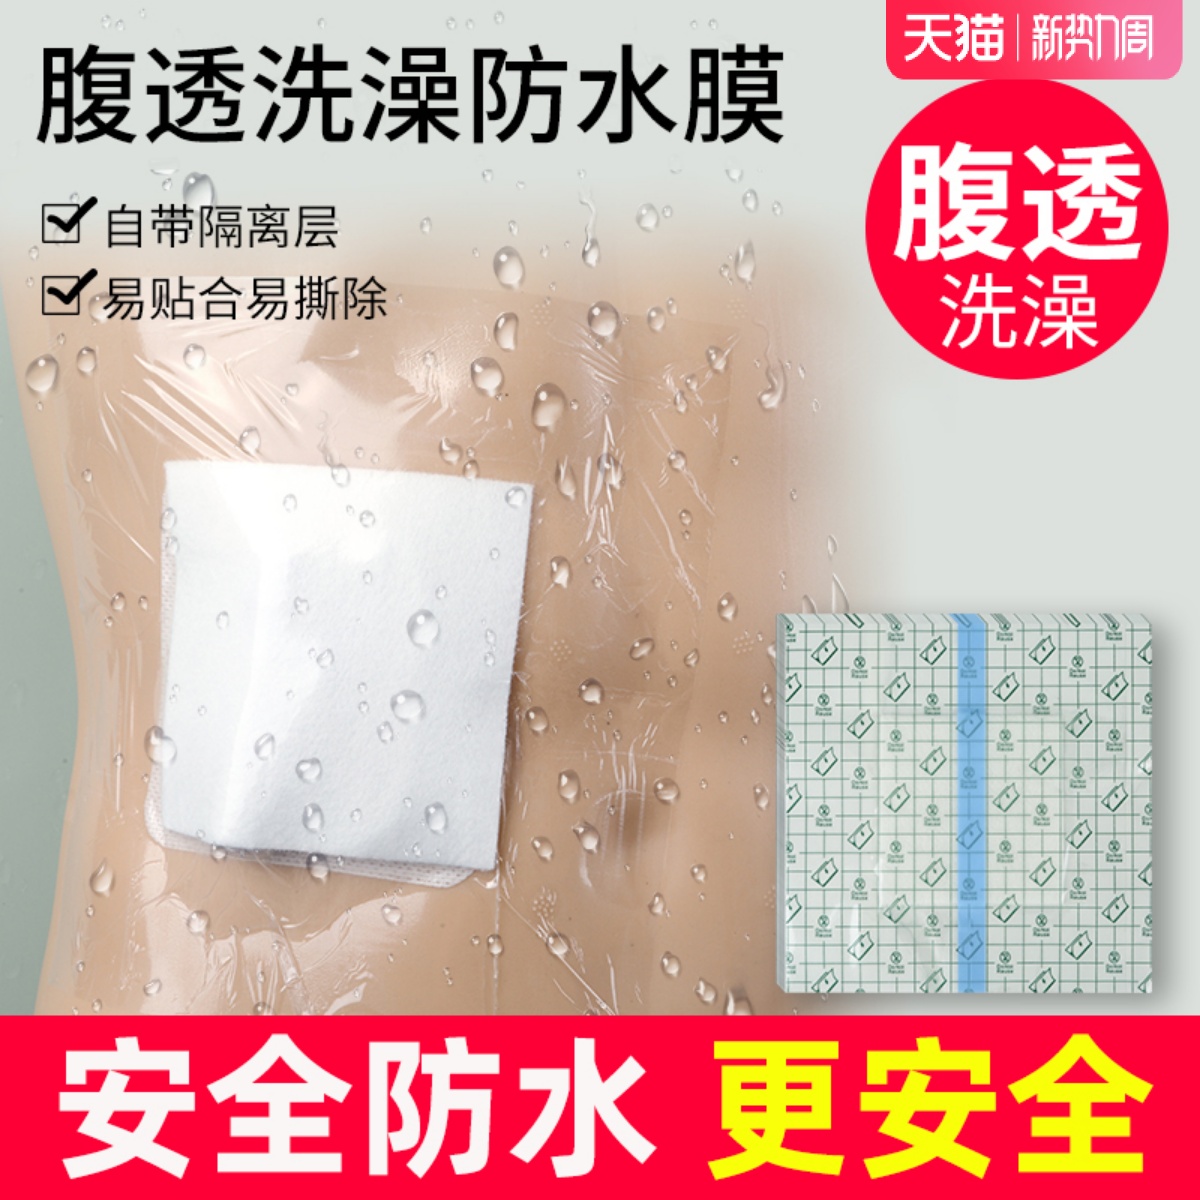 医用腹透洗澡防水贴保护袋腹膜透析护理用品伤口造口洗澡保护敷贴